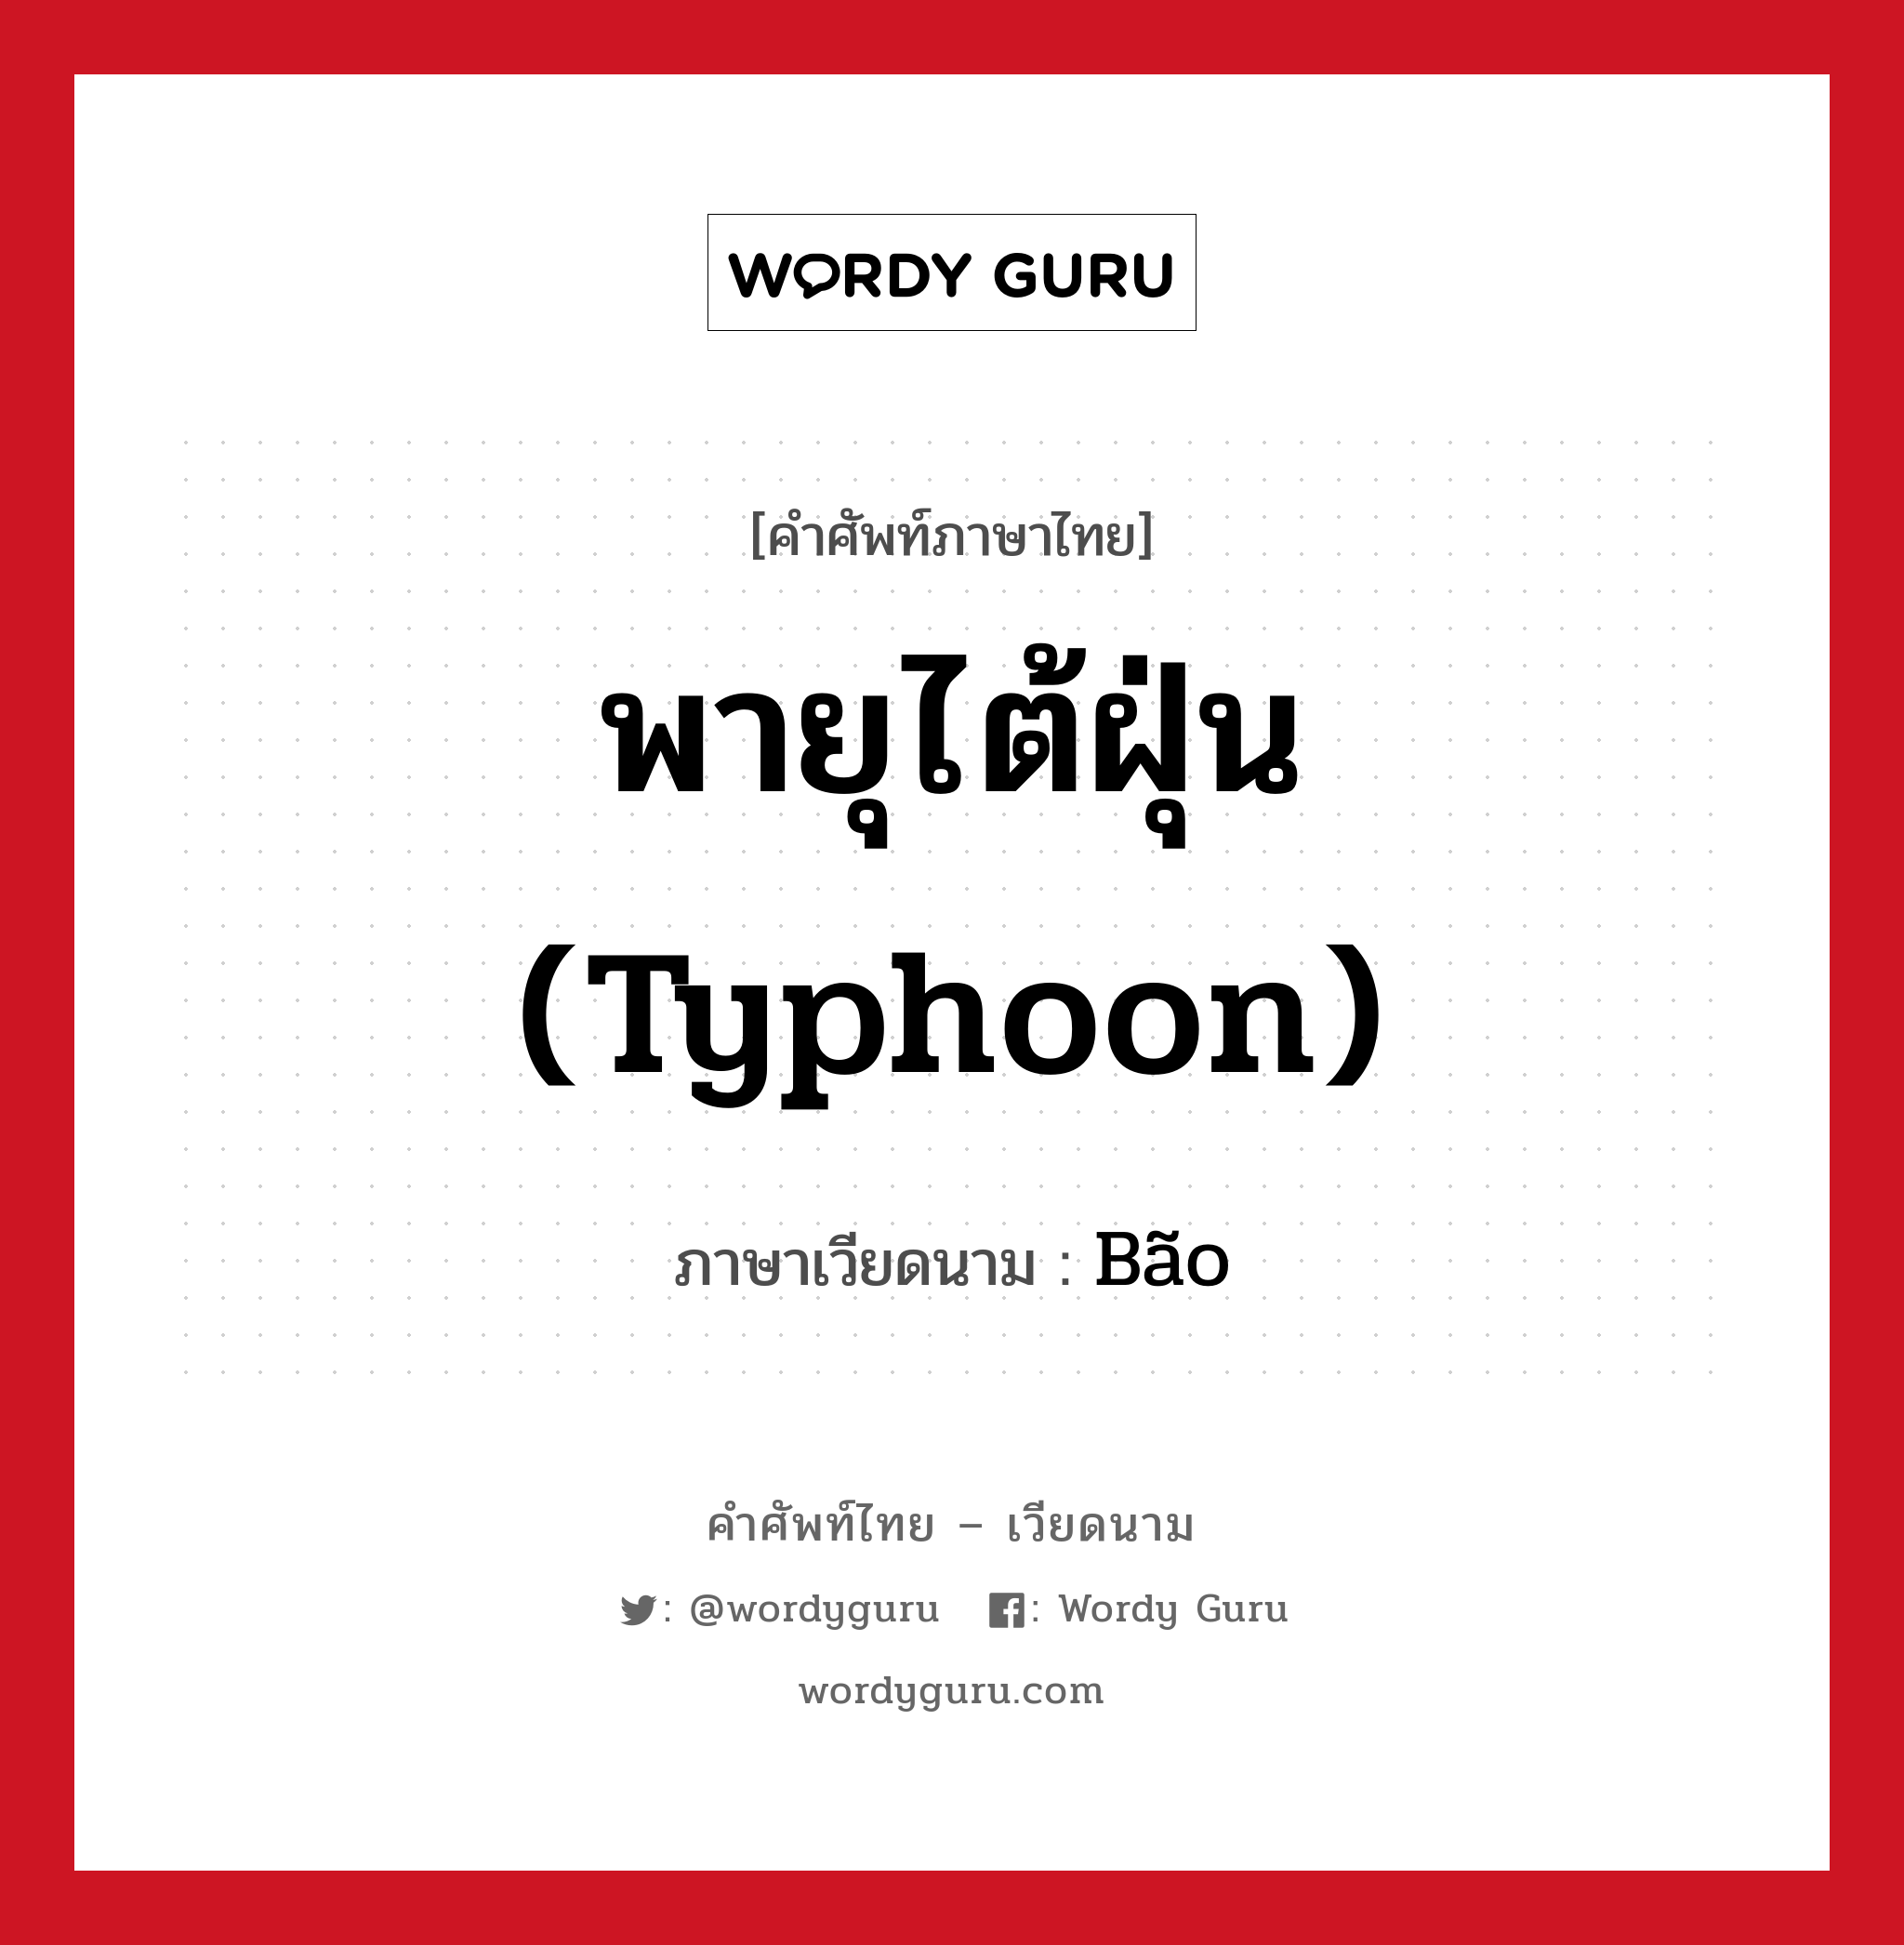 พายุไต้ฝุ่น (typhoon) ภาษาเวียดนามคืออะไร, คำศัพท์ภาษาไทย - เวียดนาม พายุไต้ฝุ่น (typhoon) ภาษาเวียดนาม Bão หมวด สภาพอากาศ หมวด สภาพอากาศ